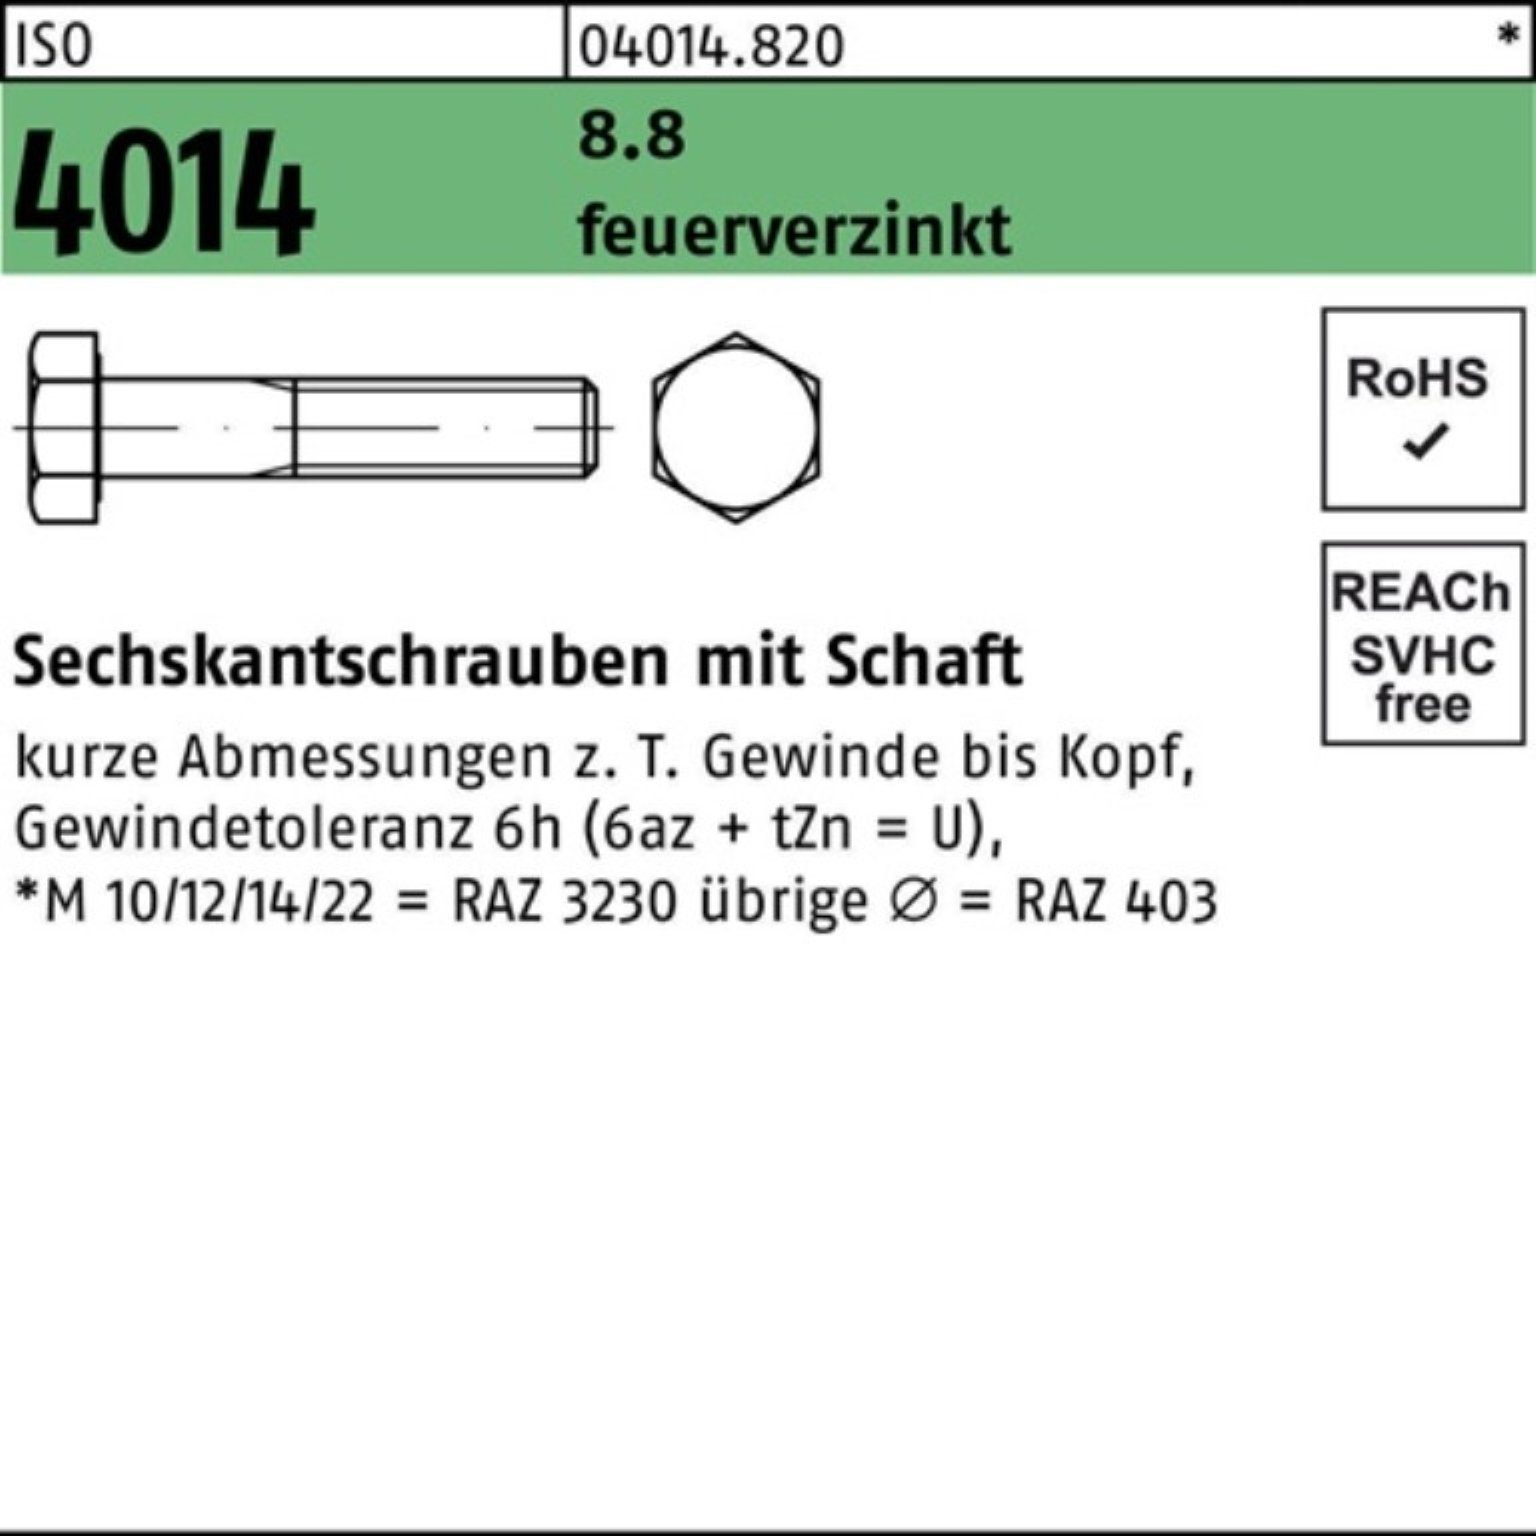 Bufab Sechskantschraube 100er Pack Sechskantschraube ISO 4014 Schaft M20x 160 8.8 feuerverz. 1